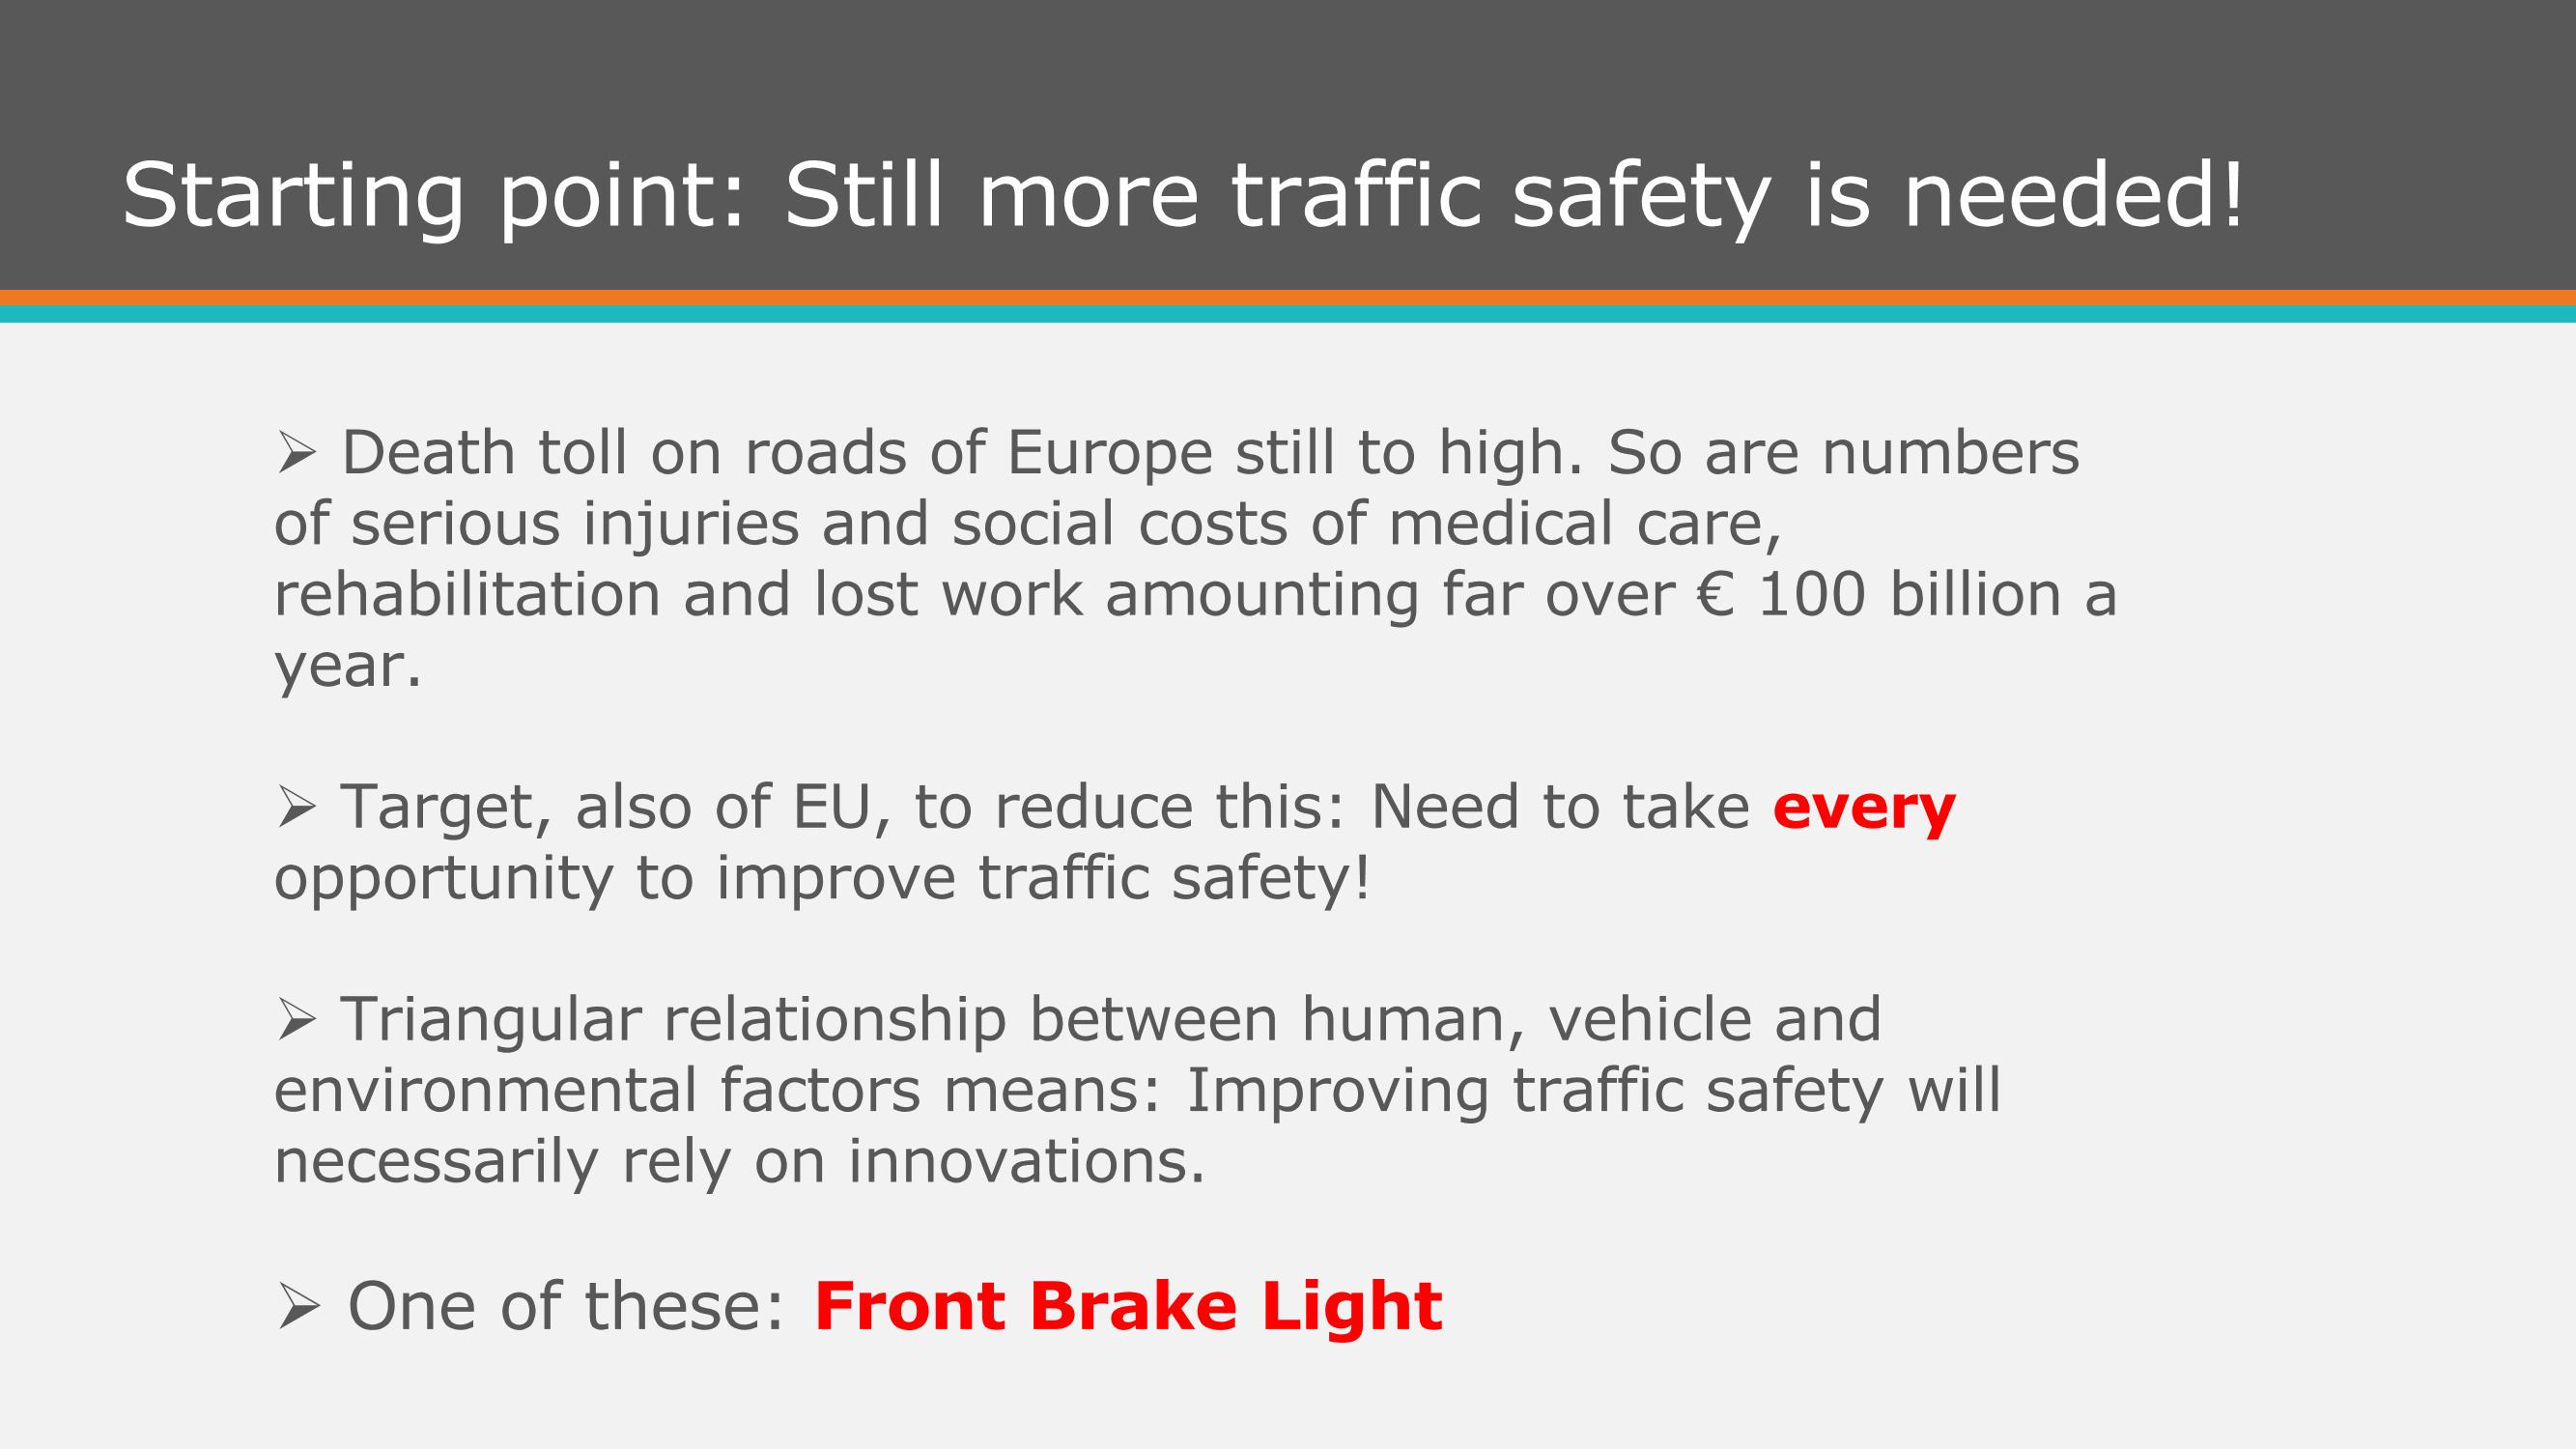 Front Brake Light Presentation FEVR General Meeting_Page_2